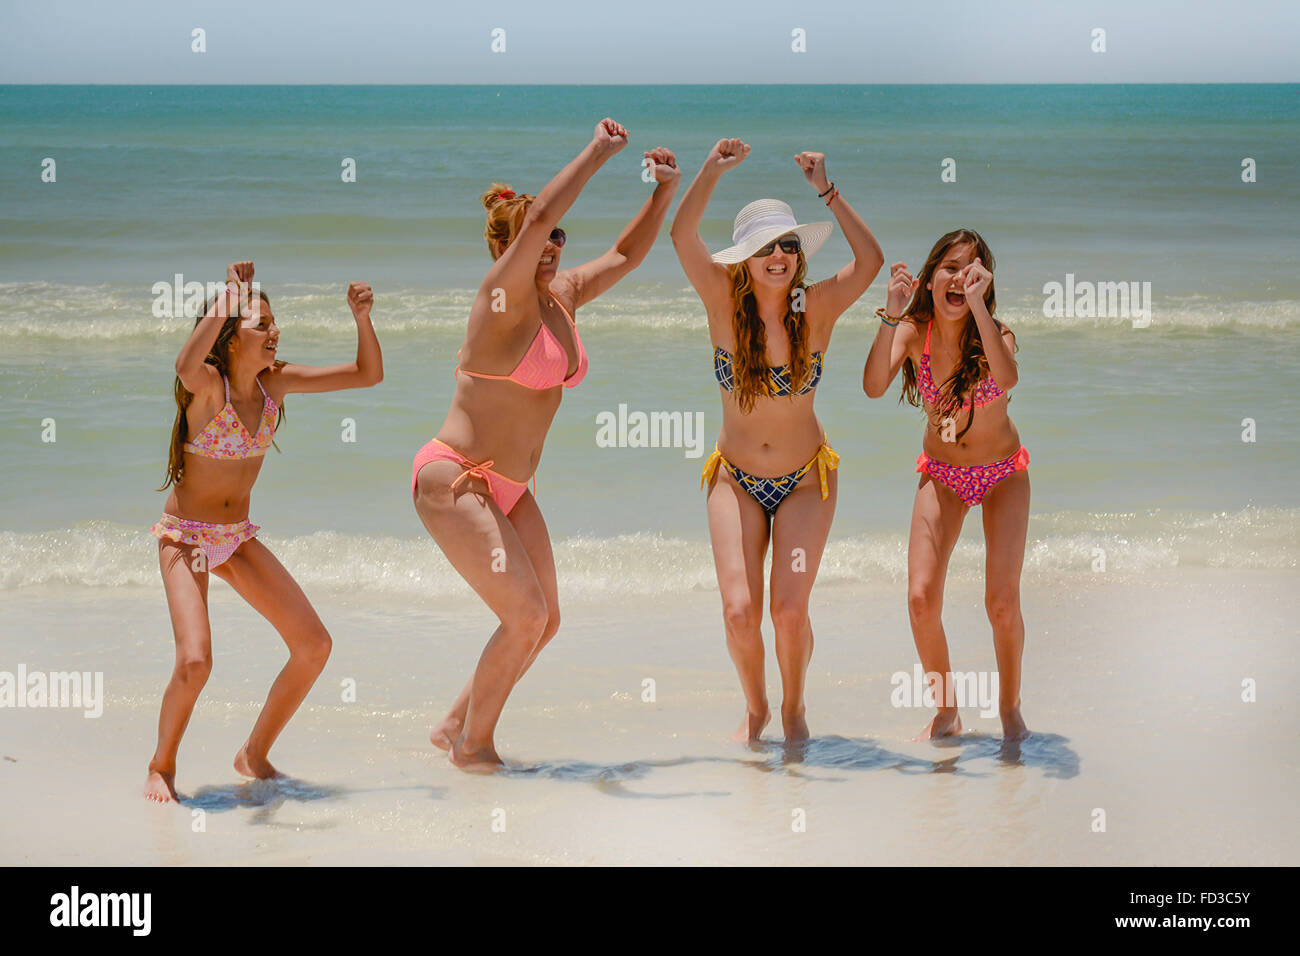 Vier jubelnde Frauen in Bikinis zu feiern, lachen und Ausgelassenheit in der Brandung am Strand Stockfoto